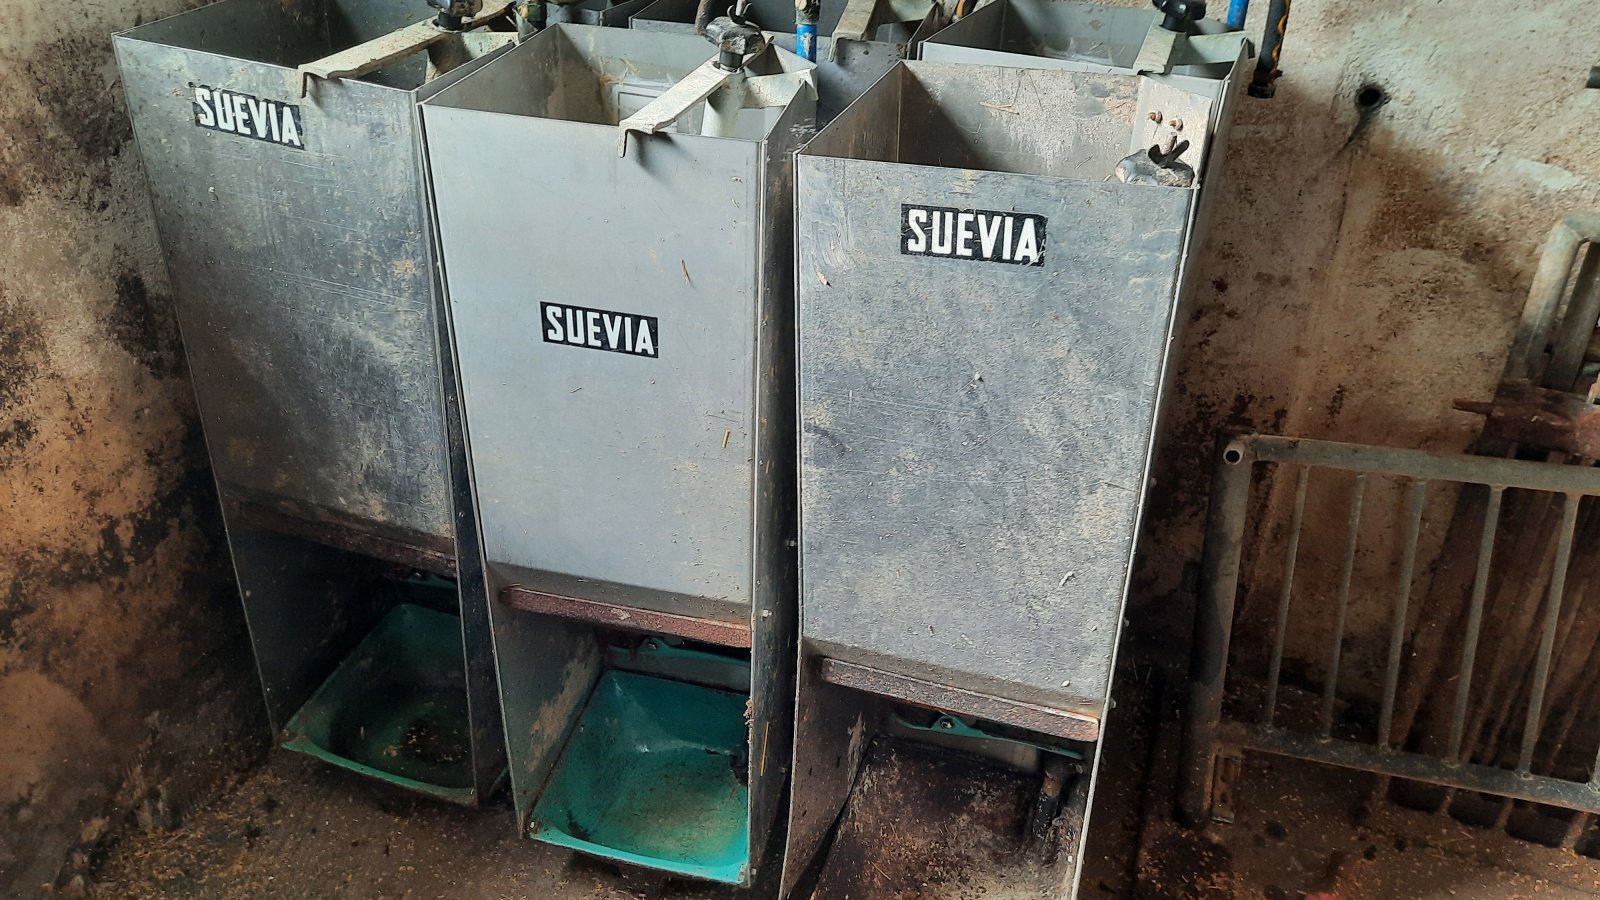 Sonstige Fütterungstechnik des Typs Suevia Suppenfütterer, Gebrauchtmaschine in Lupburg (Bild 1)